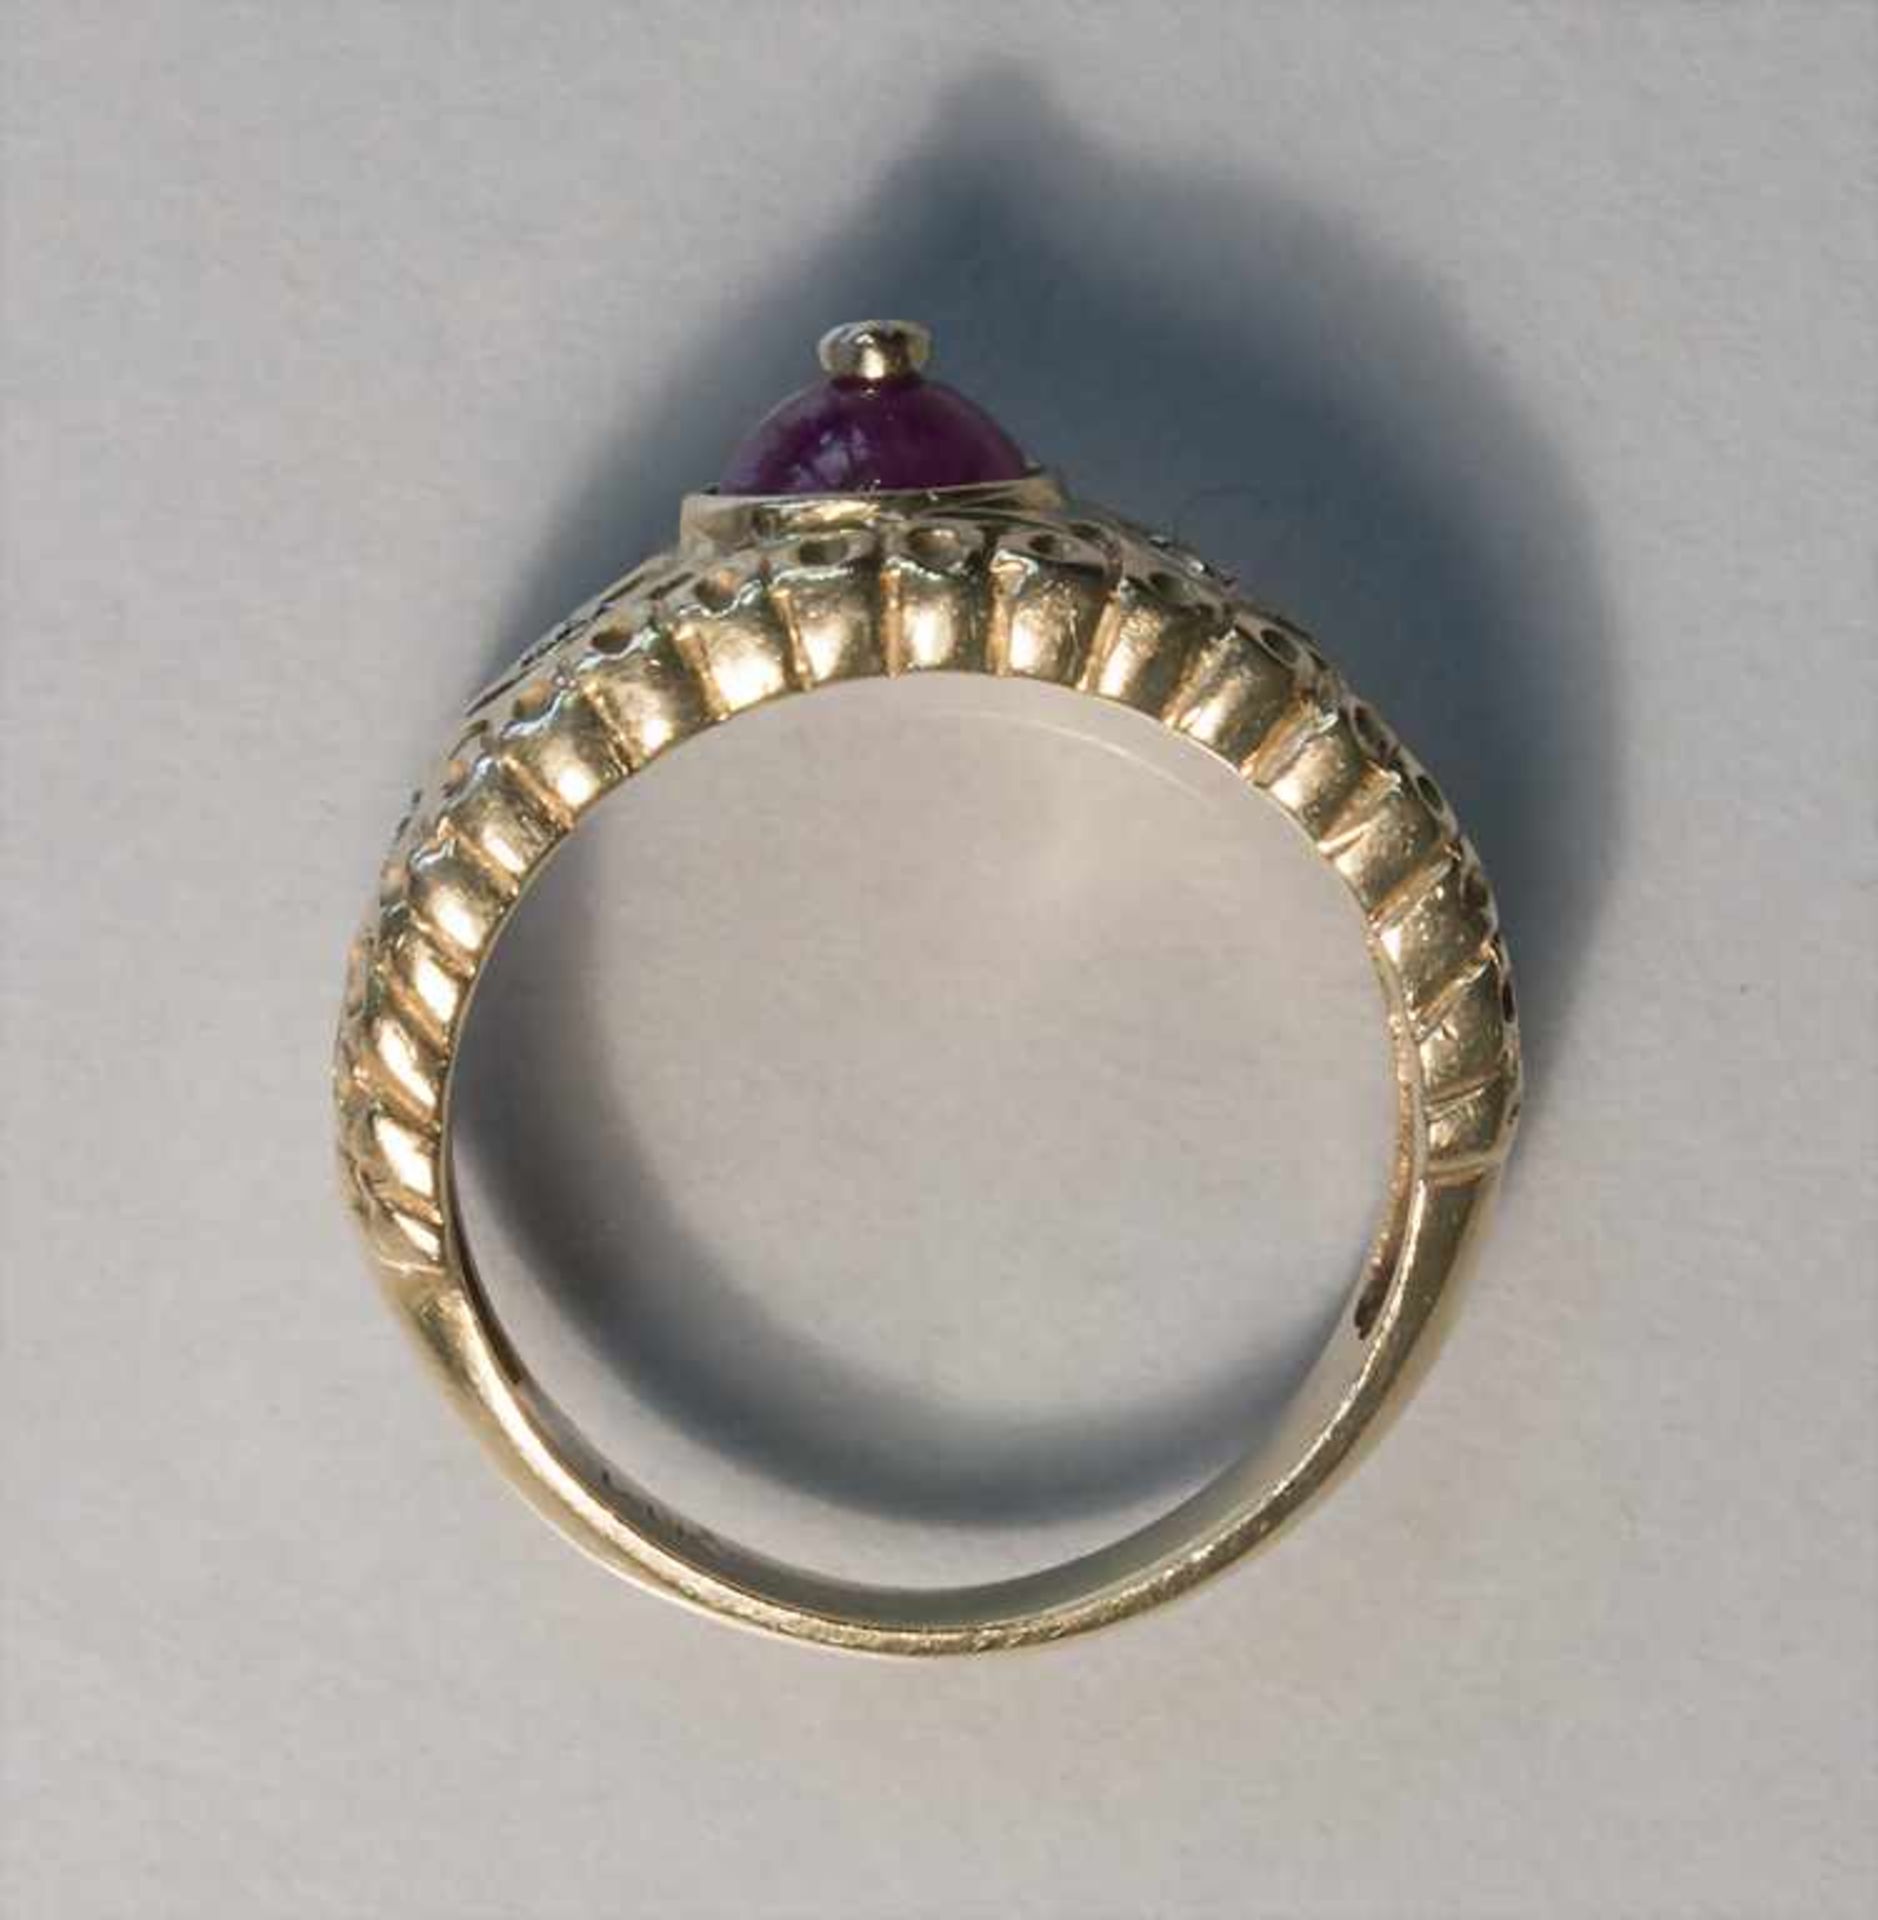 Damenring mit violettem Stein und Diamanten / A ladies ring with a violet stone and diamonds - Bild 4 aus 4